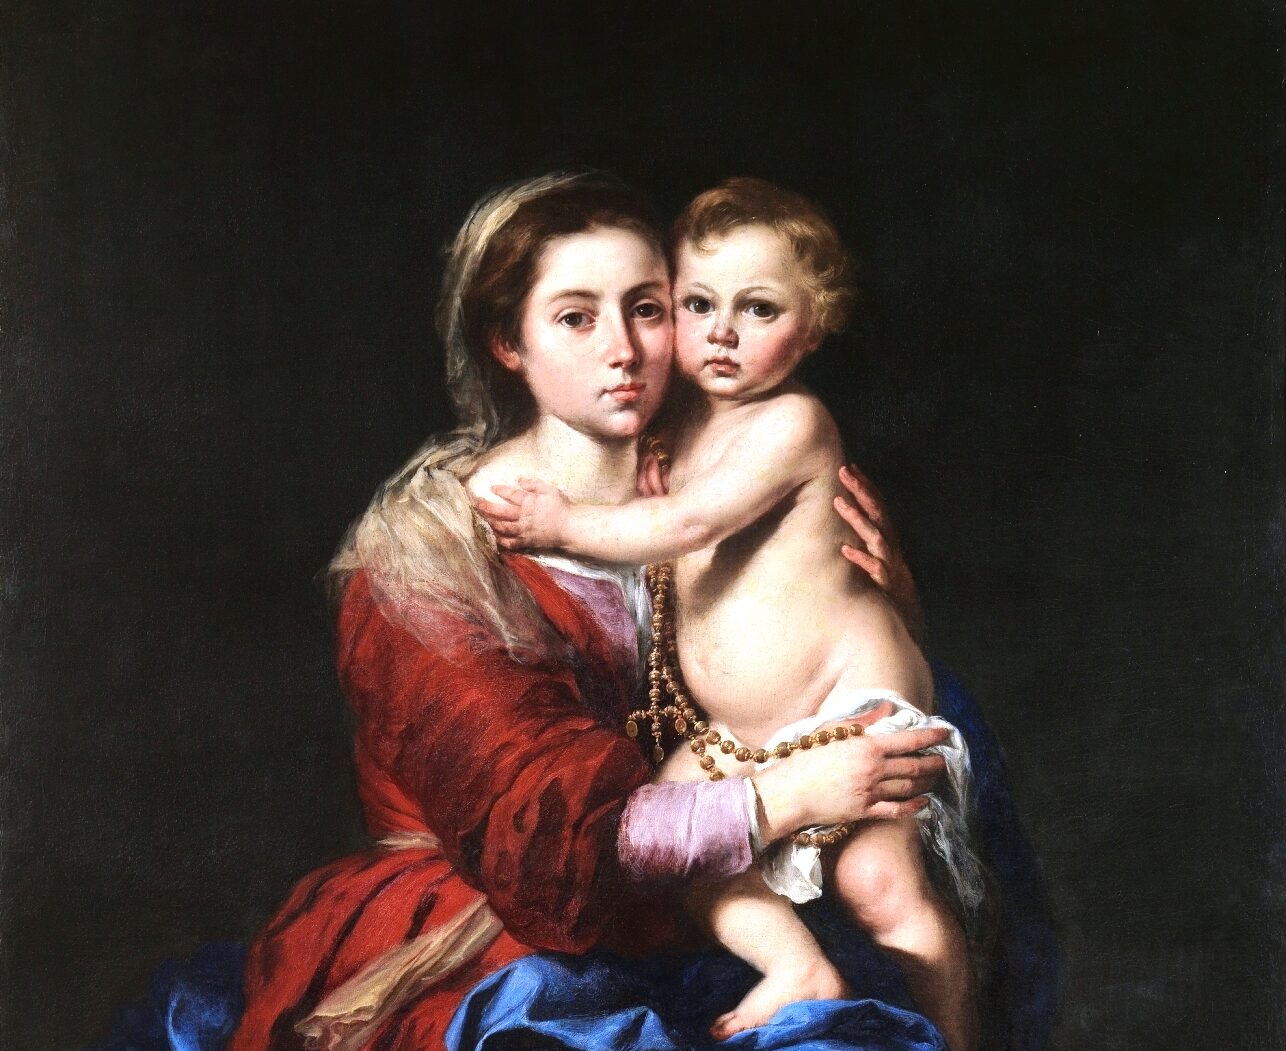 Bartolomé Esteban Murillo, „Madonna z różańcem”, fragment, ok. 1650–1655, olej na płótnie, 164 × 110 cm, Prado, domena publiczna